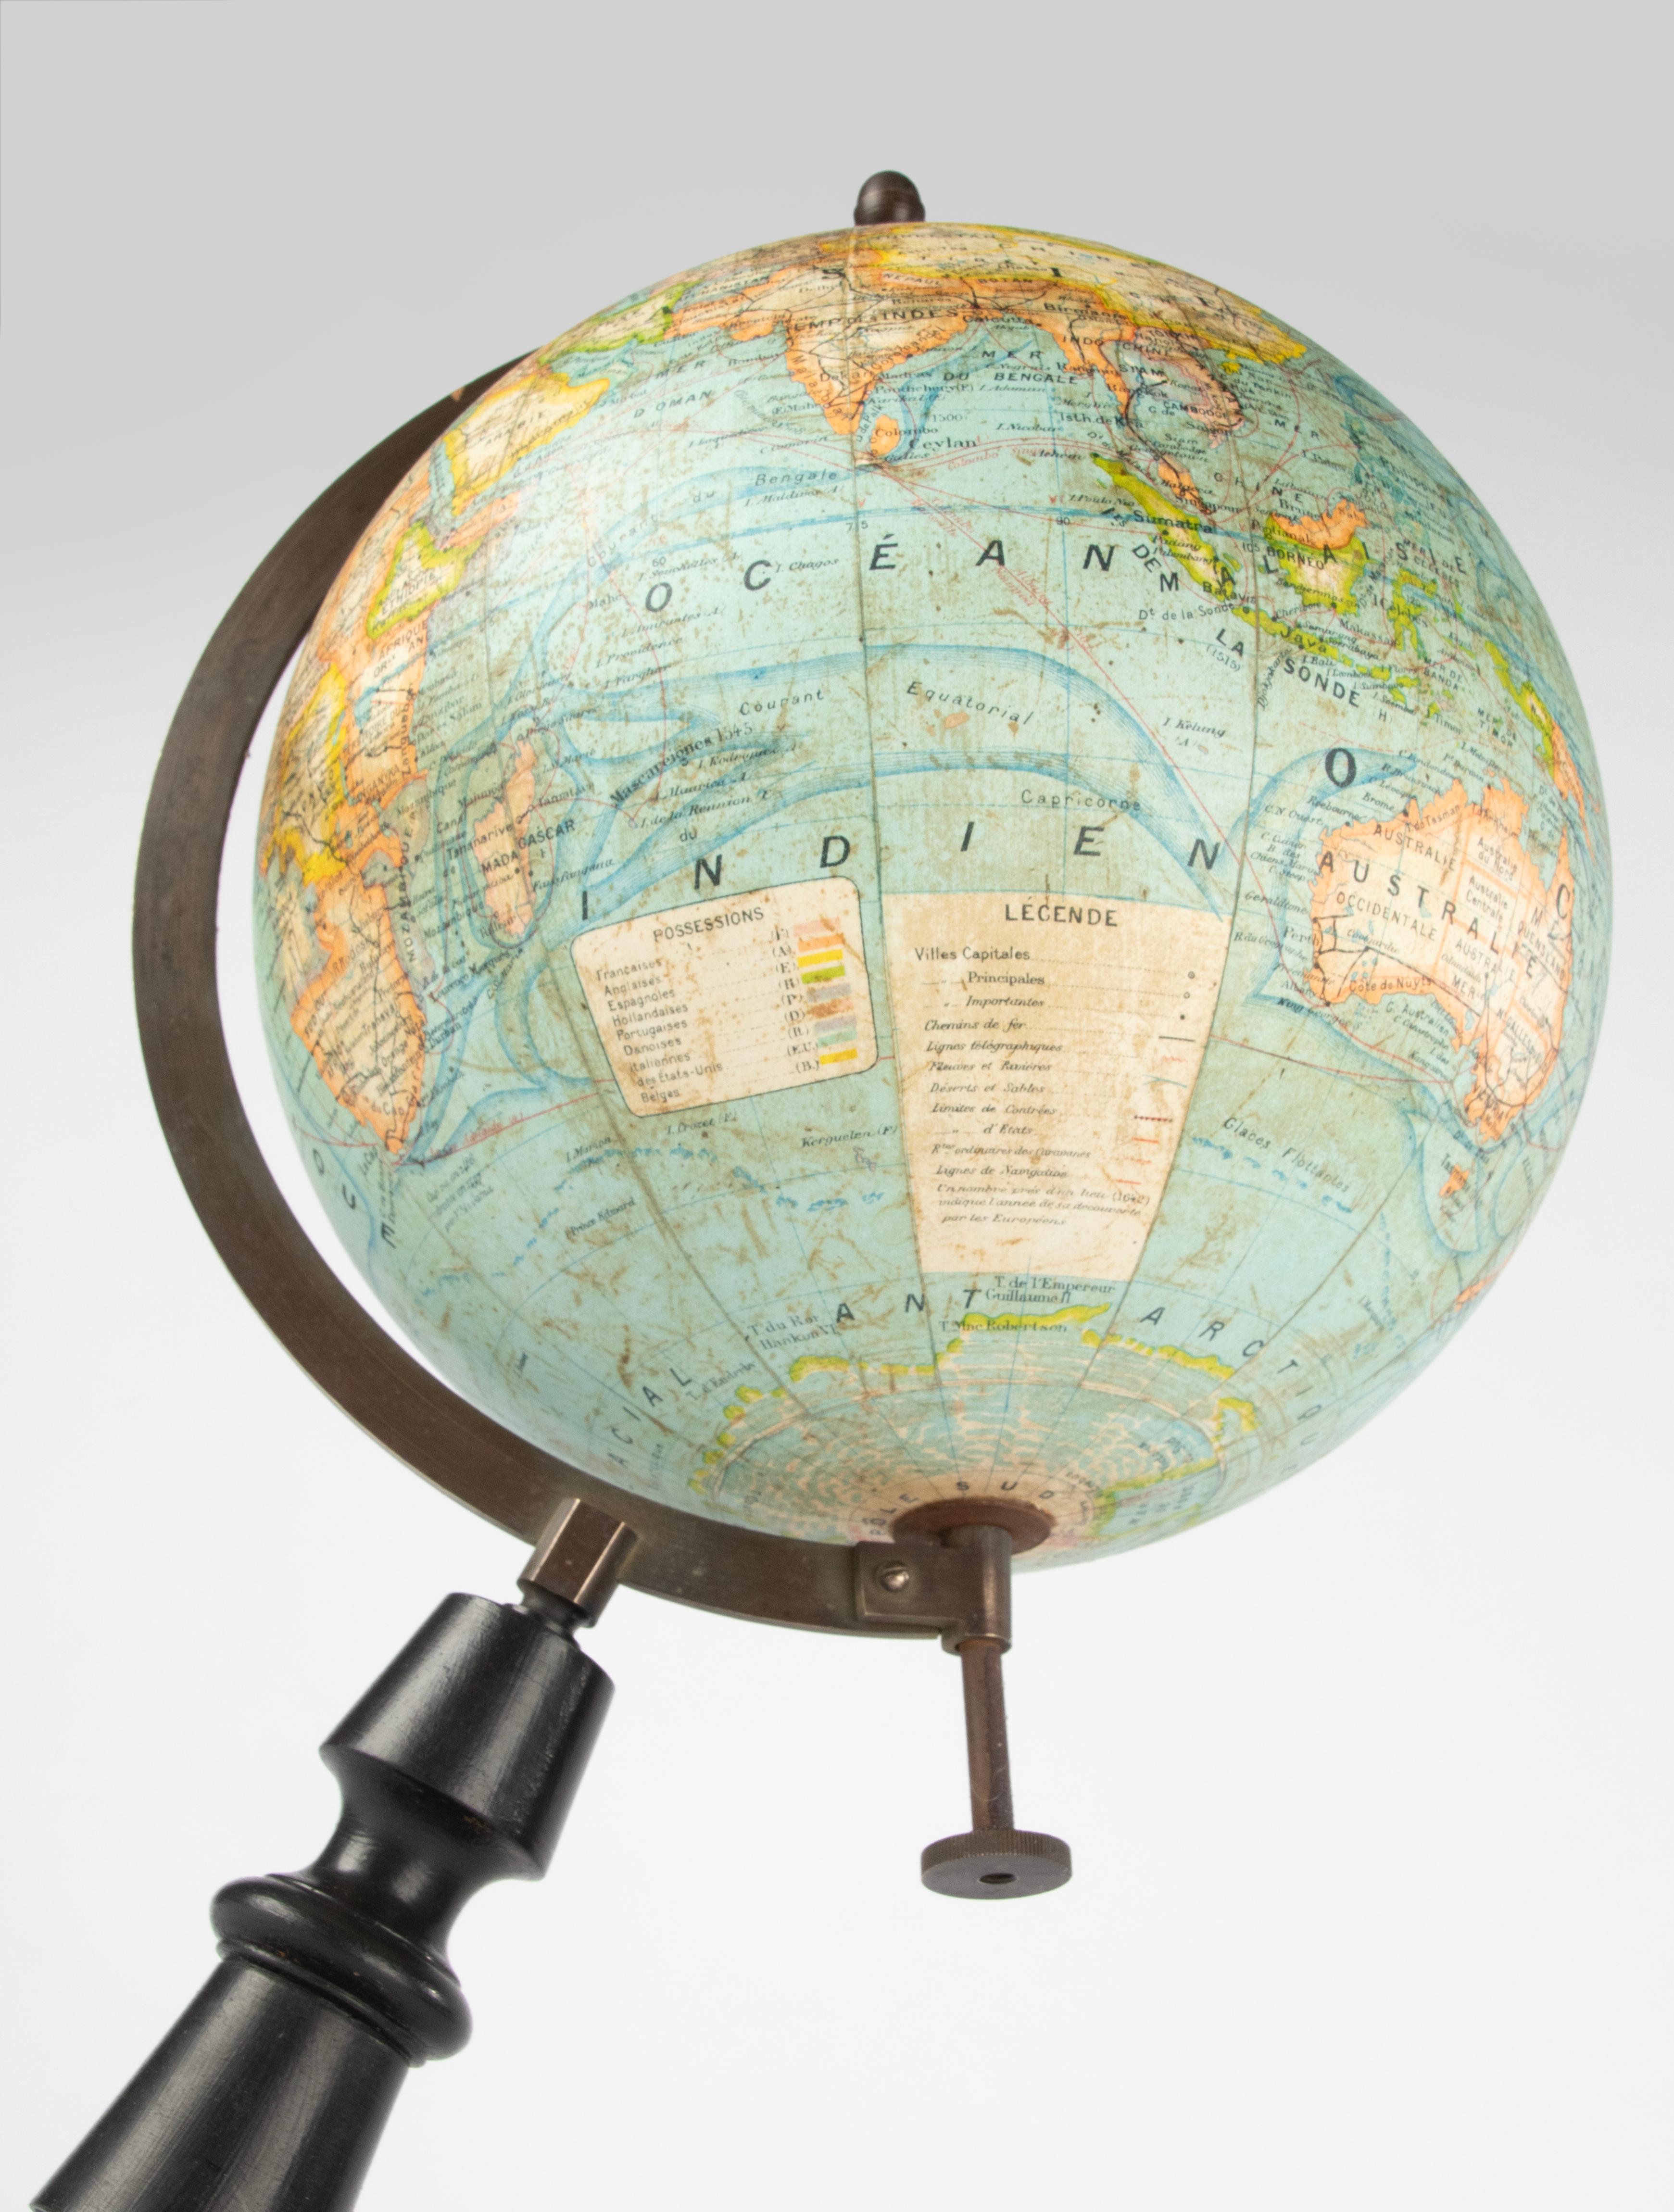 World Globe des späten 19. Jahrhunderts – herausgegeben von J. Forest Paris – Globe Terrestre 1